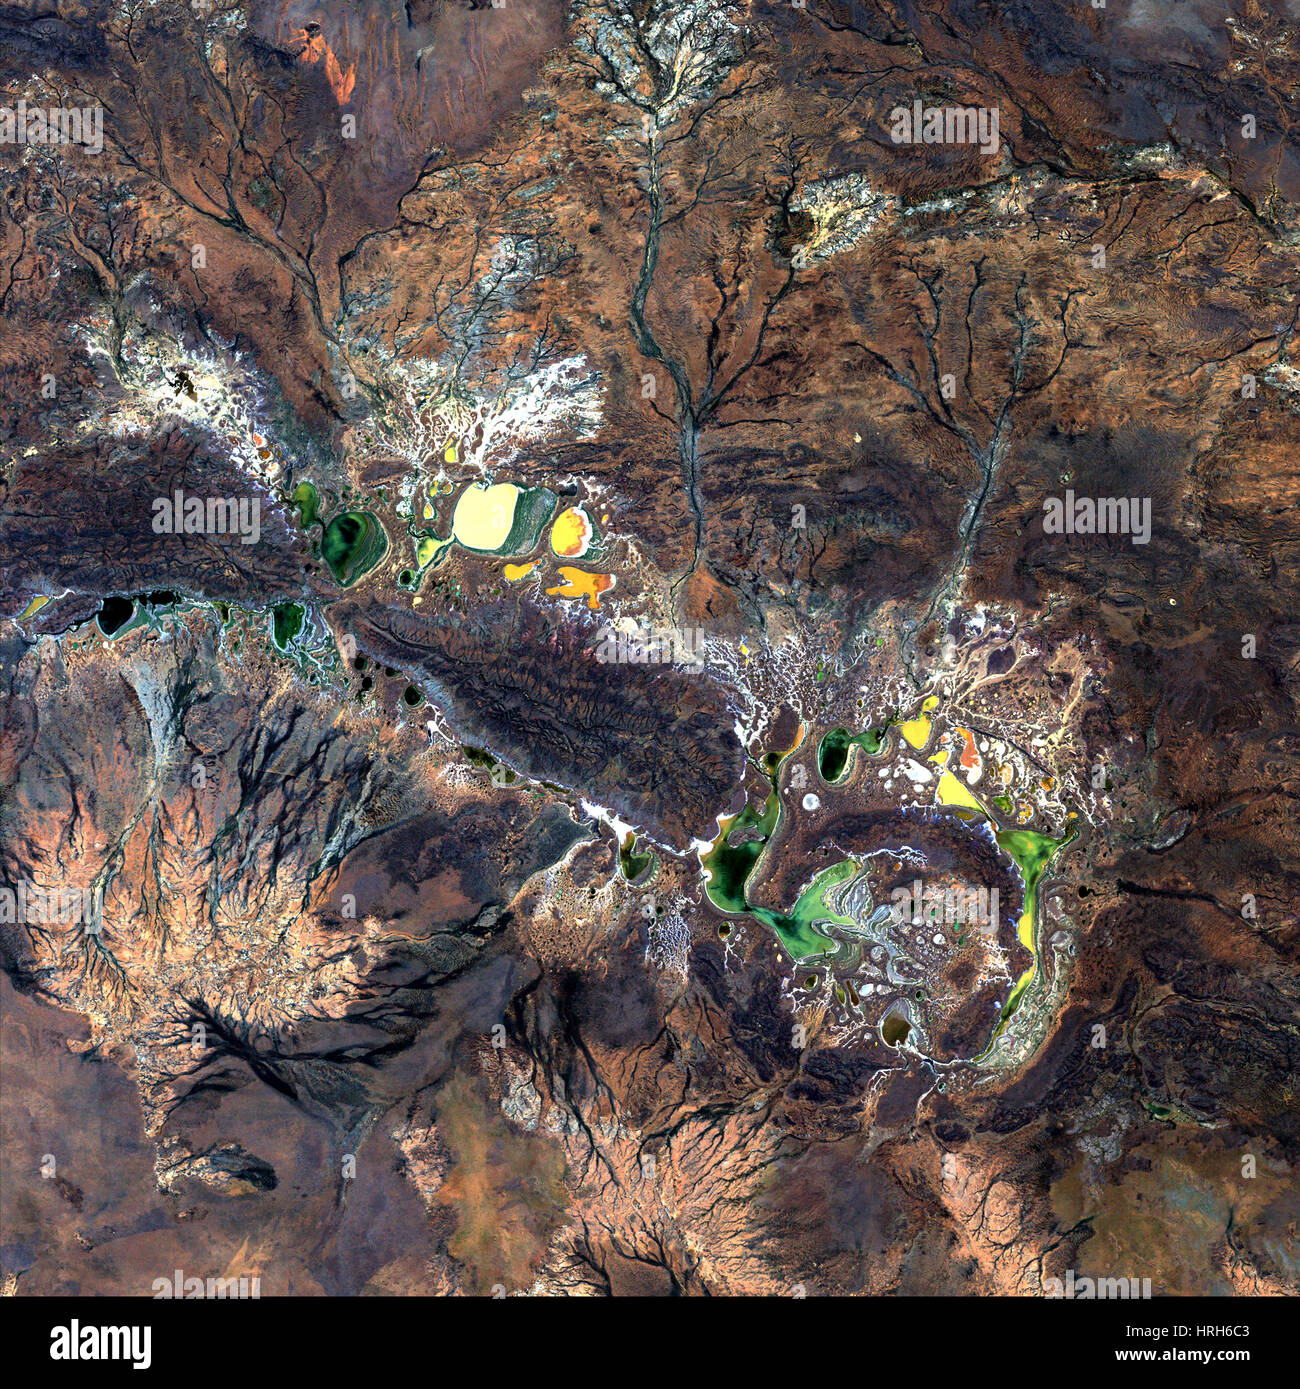 Shoemaker Crater, Landsat Image Stock Photo